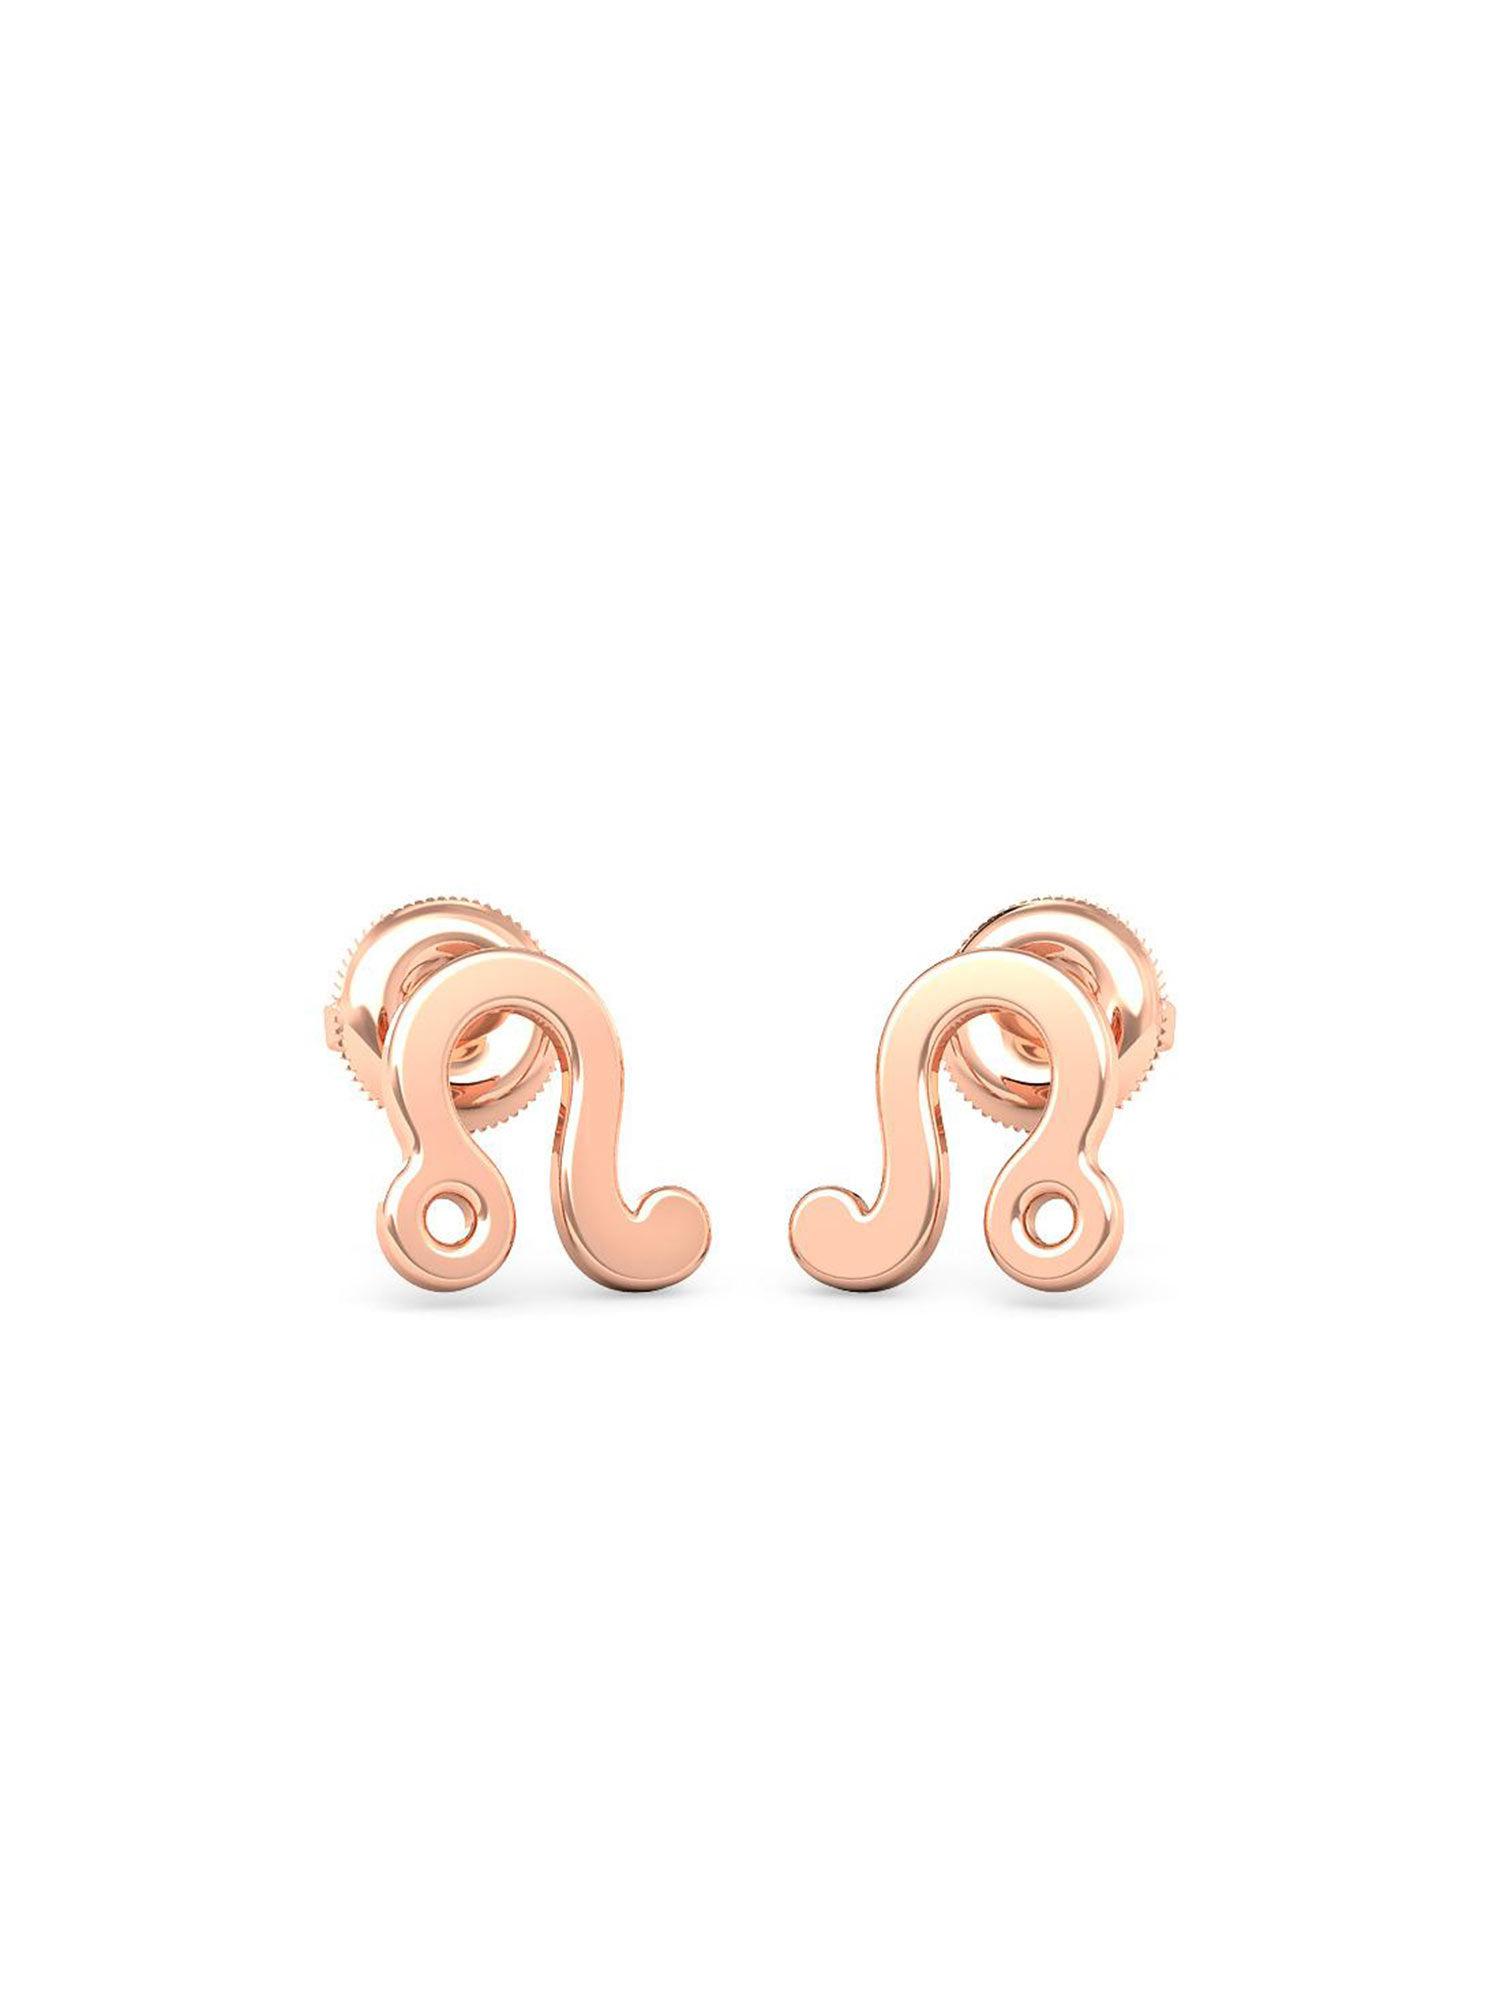 14k rose gold leo stud earring for women